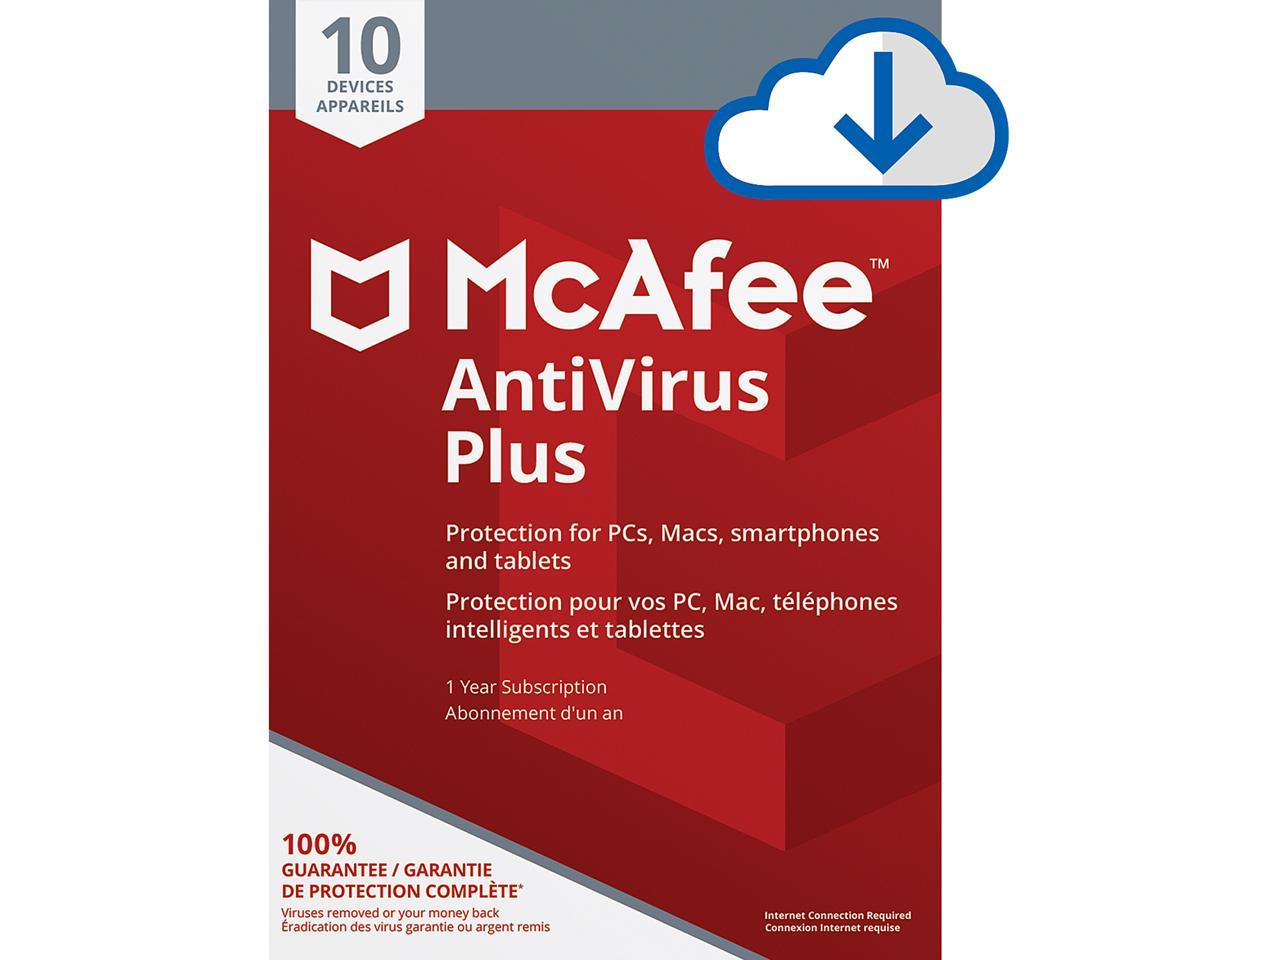 mcafee antivirus download free